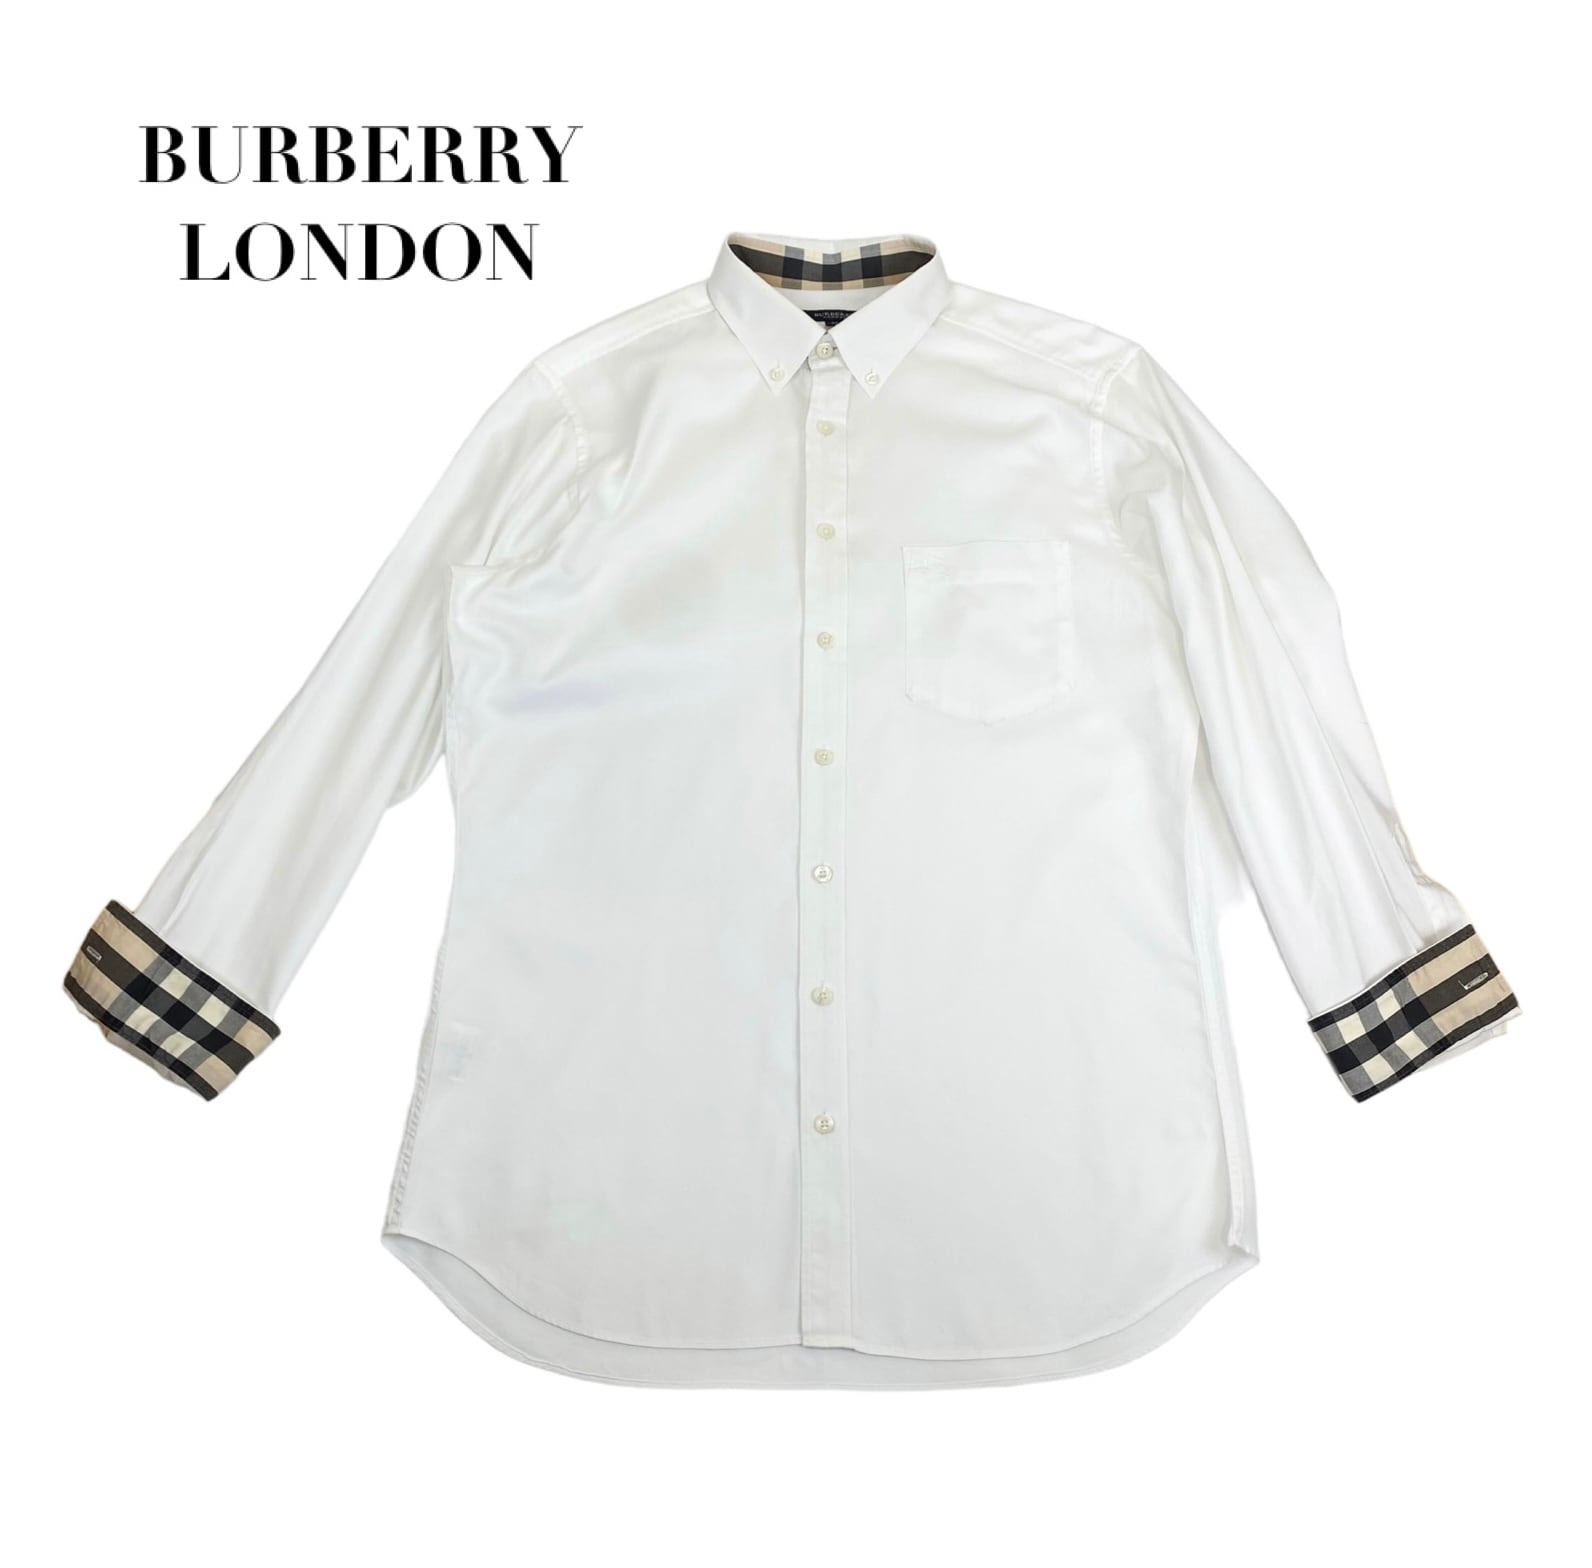 【BROWN】バーバリー ボタンダウンシャツ メンズ